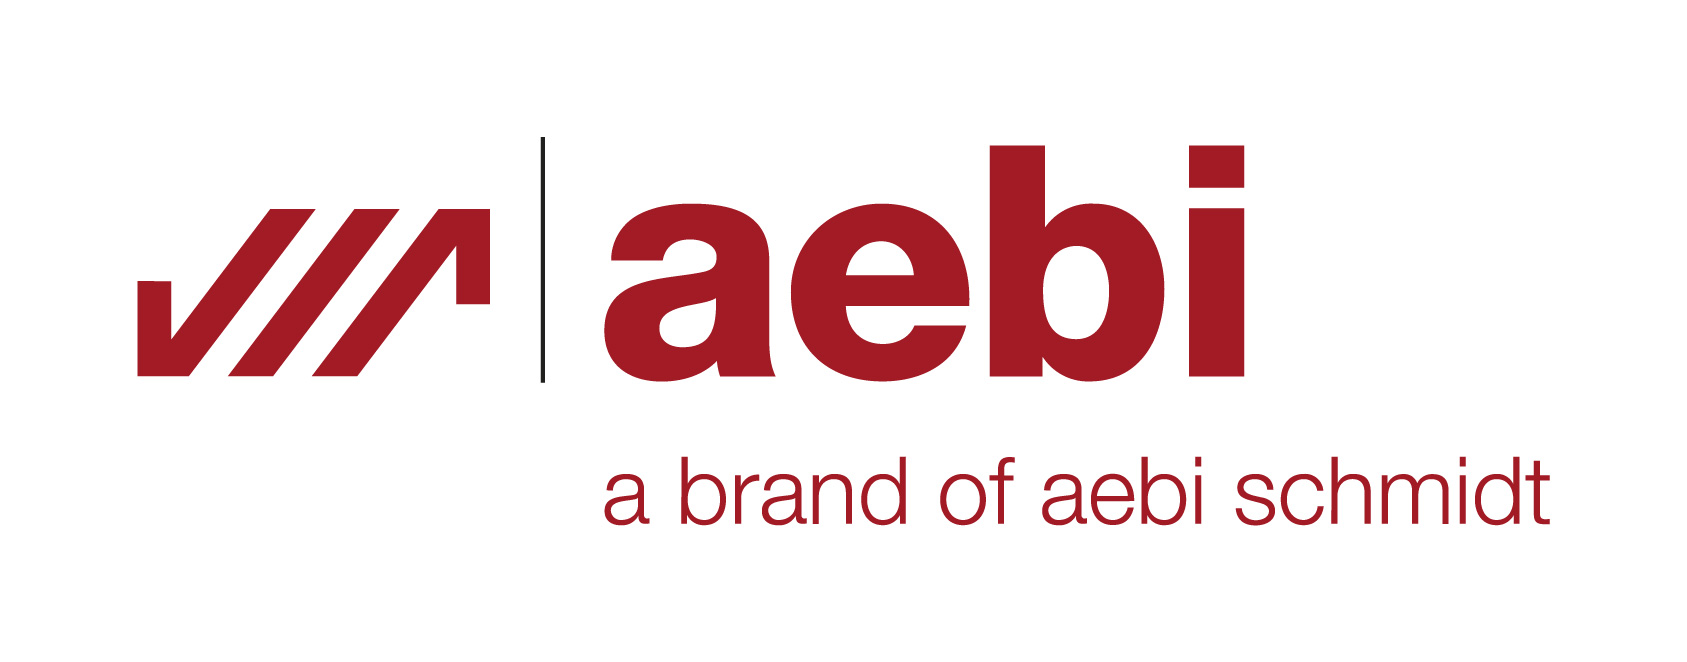 aebi logo 2015 klein